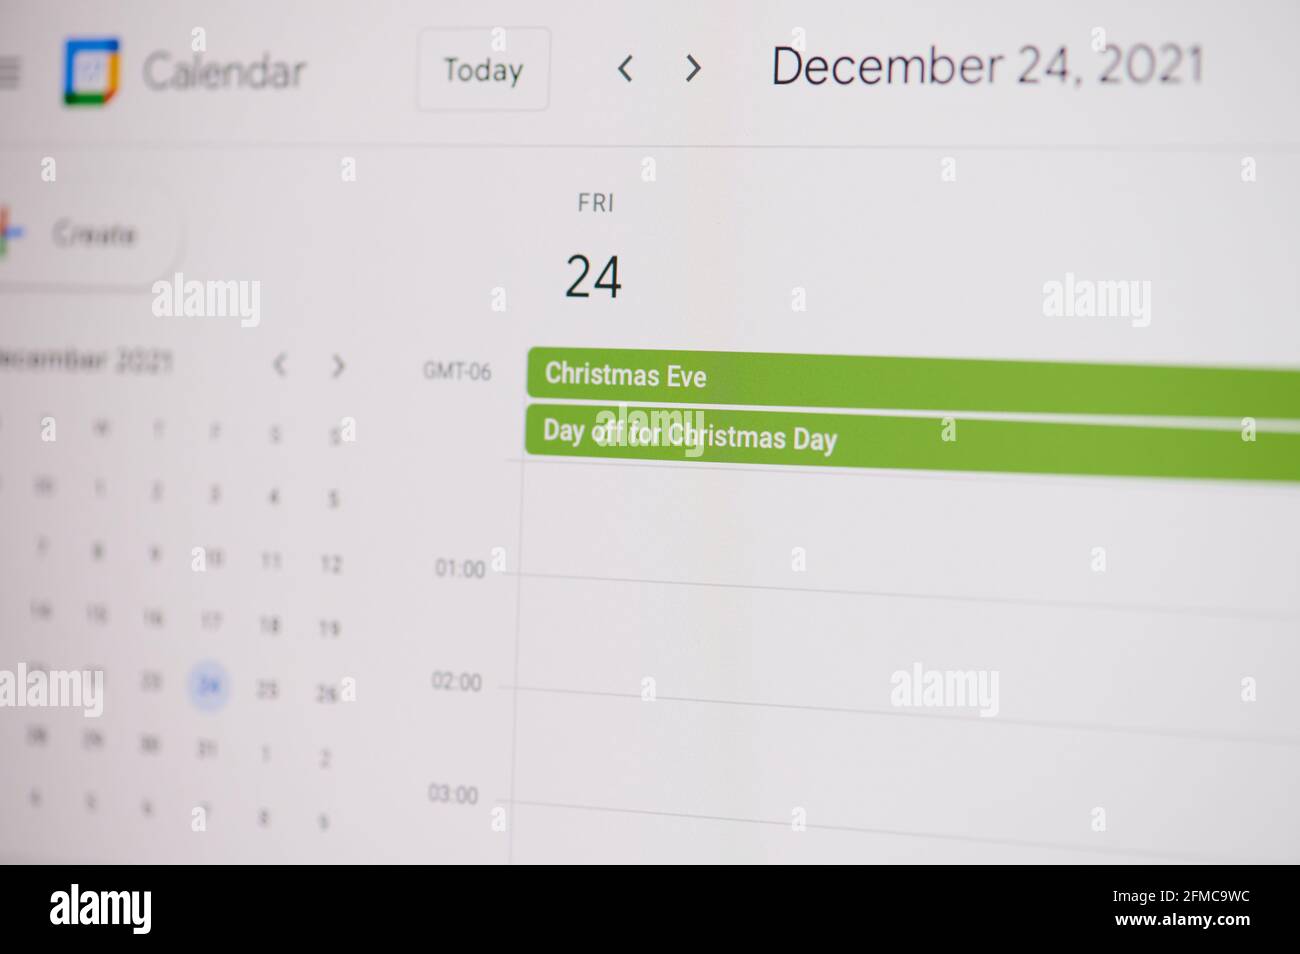 Nueva york, EE.UU. - 17 de febrero de 2021: Nochebuena 24 de diciembre en el calendario de google en la pantalla del portátil de cerca de la vista. Foto de stock